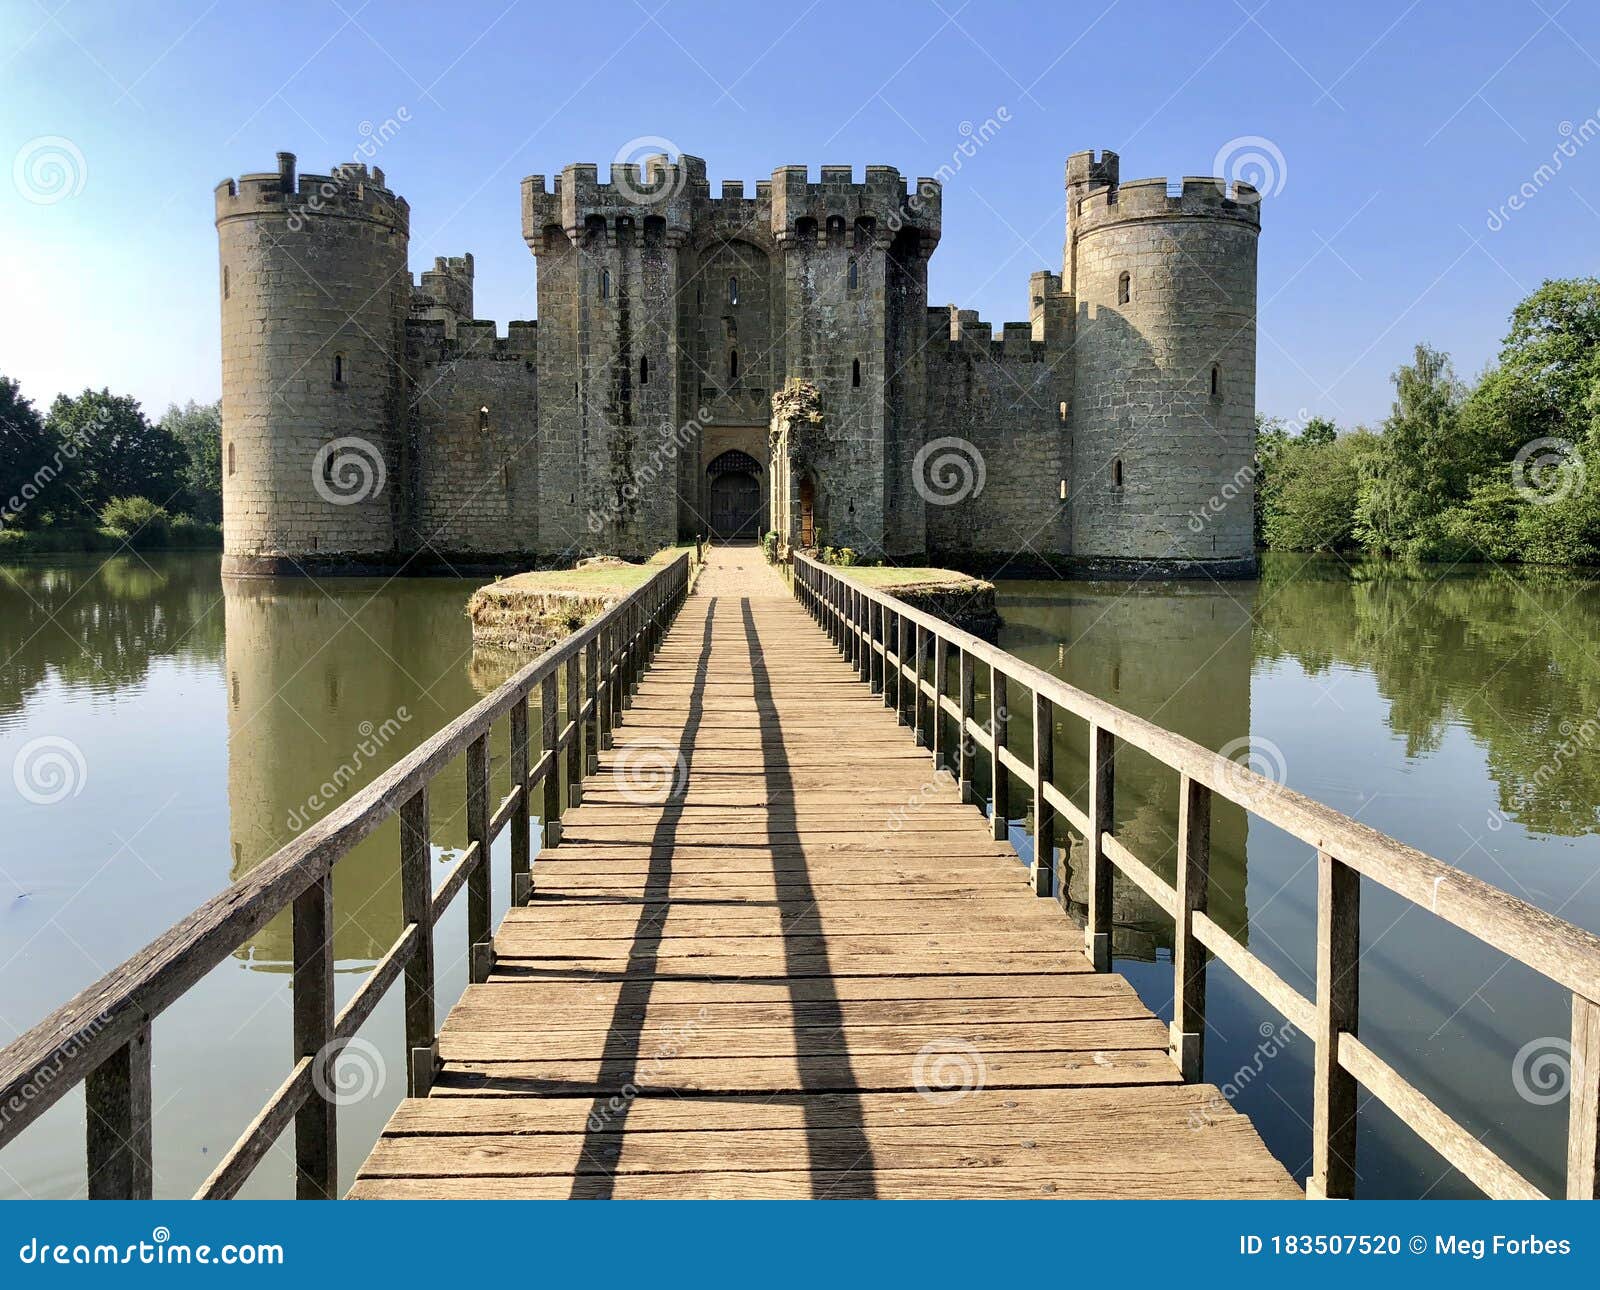 Bodium Castle Drawbridge in East Sussex England Stock Photo - Image of